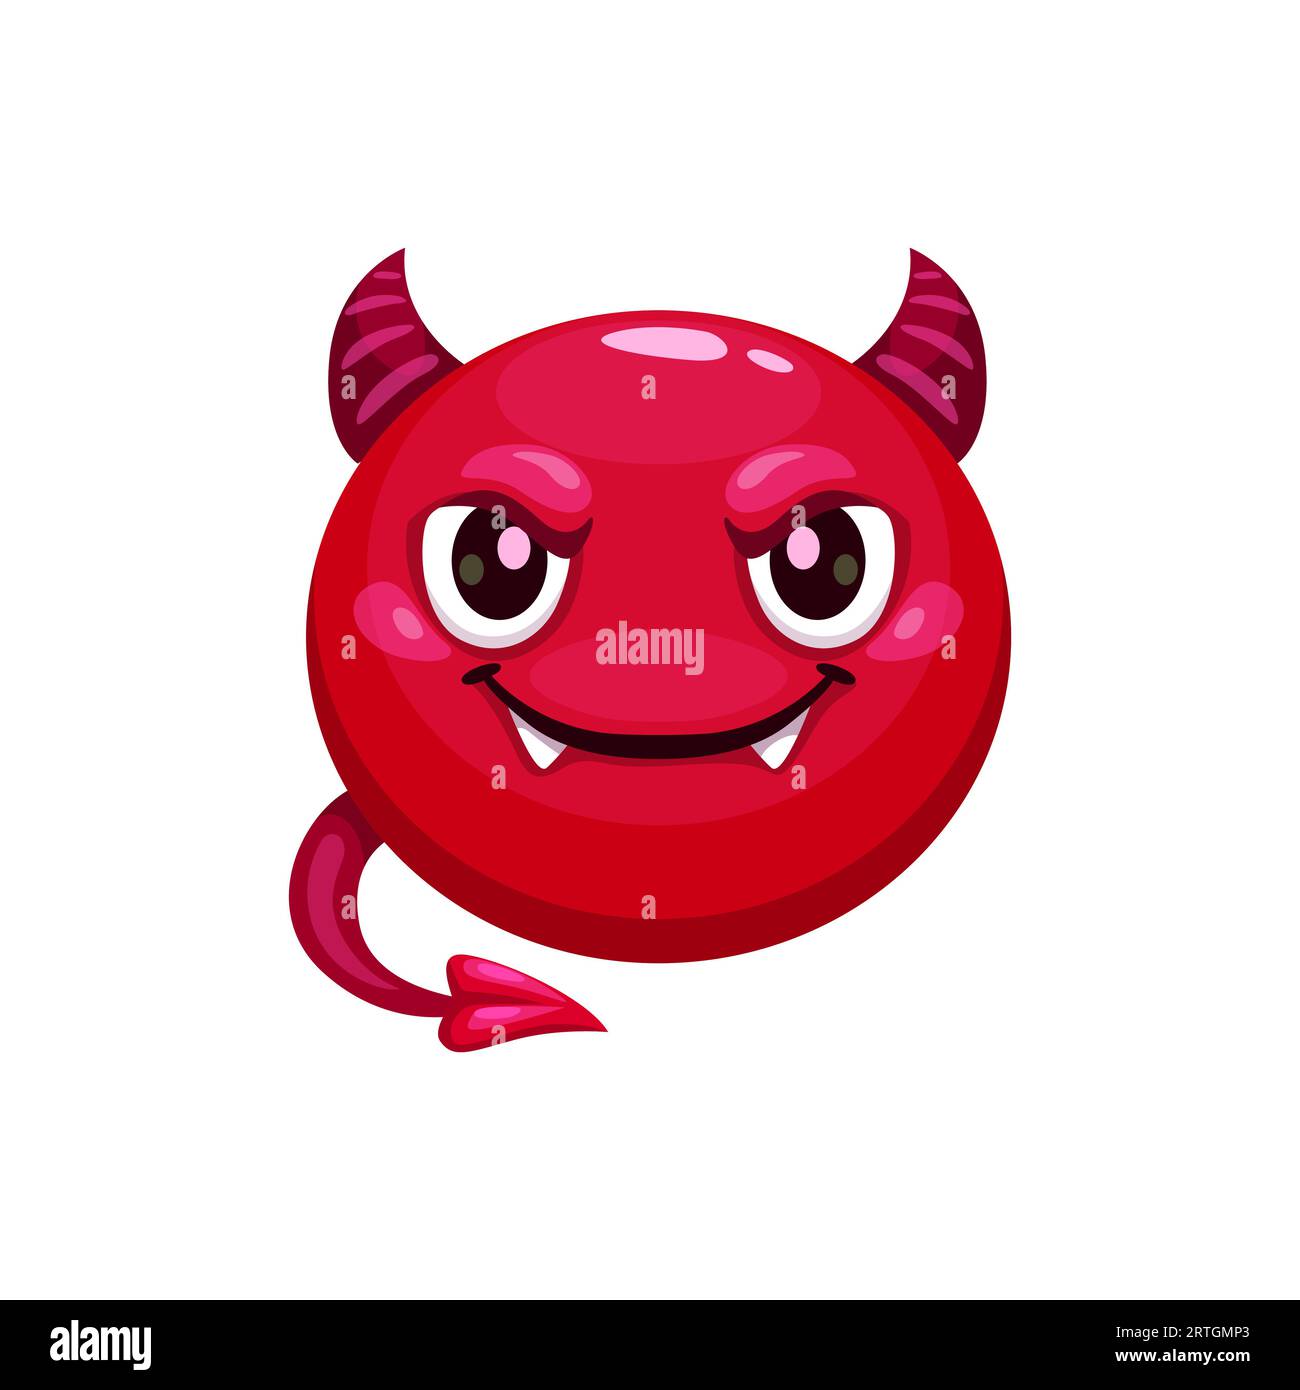 Dessin animé Halloween Devil emoji, représente un visage malicieux et souriant avec des cornes diaboliques et un sourire sinistre, utilisé pour transmettre des intentions ludiques ou méchantes dans des messages. Face rouge du vecteur isolé de l'imp Illustration de Vecteur